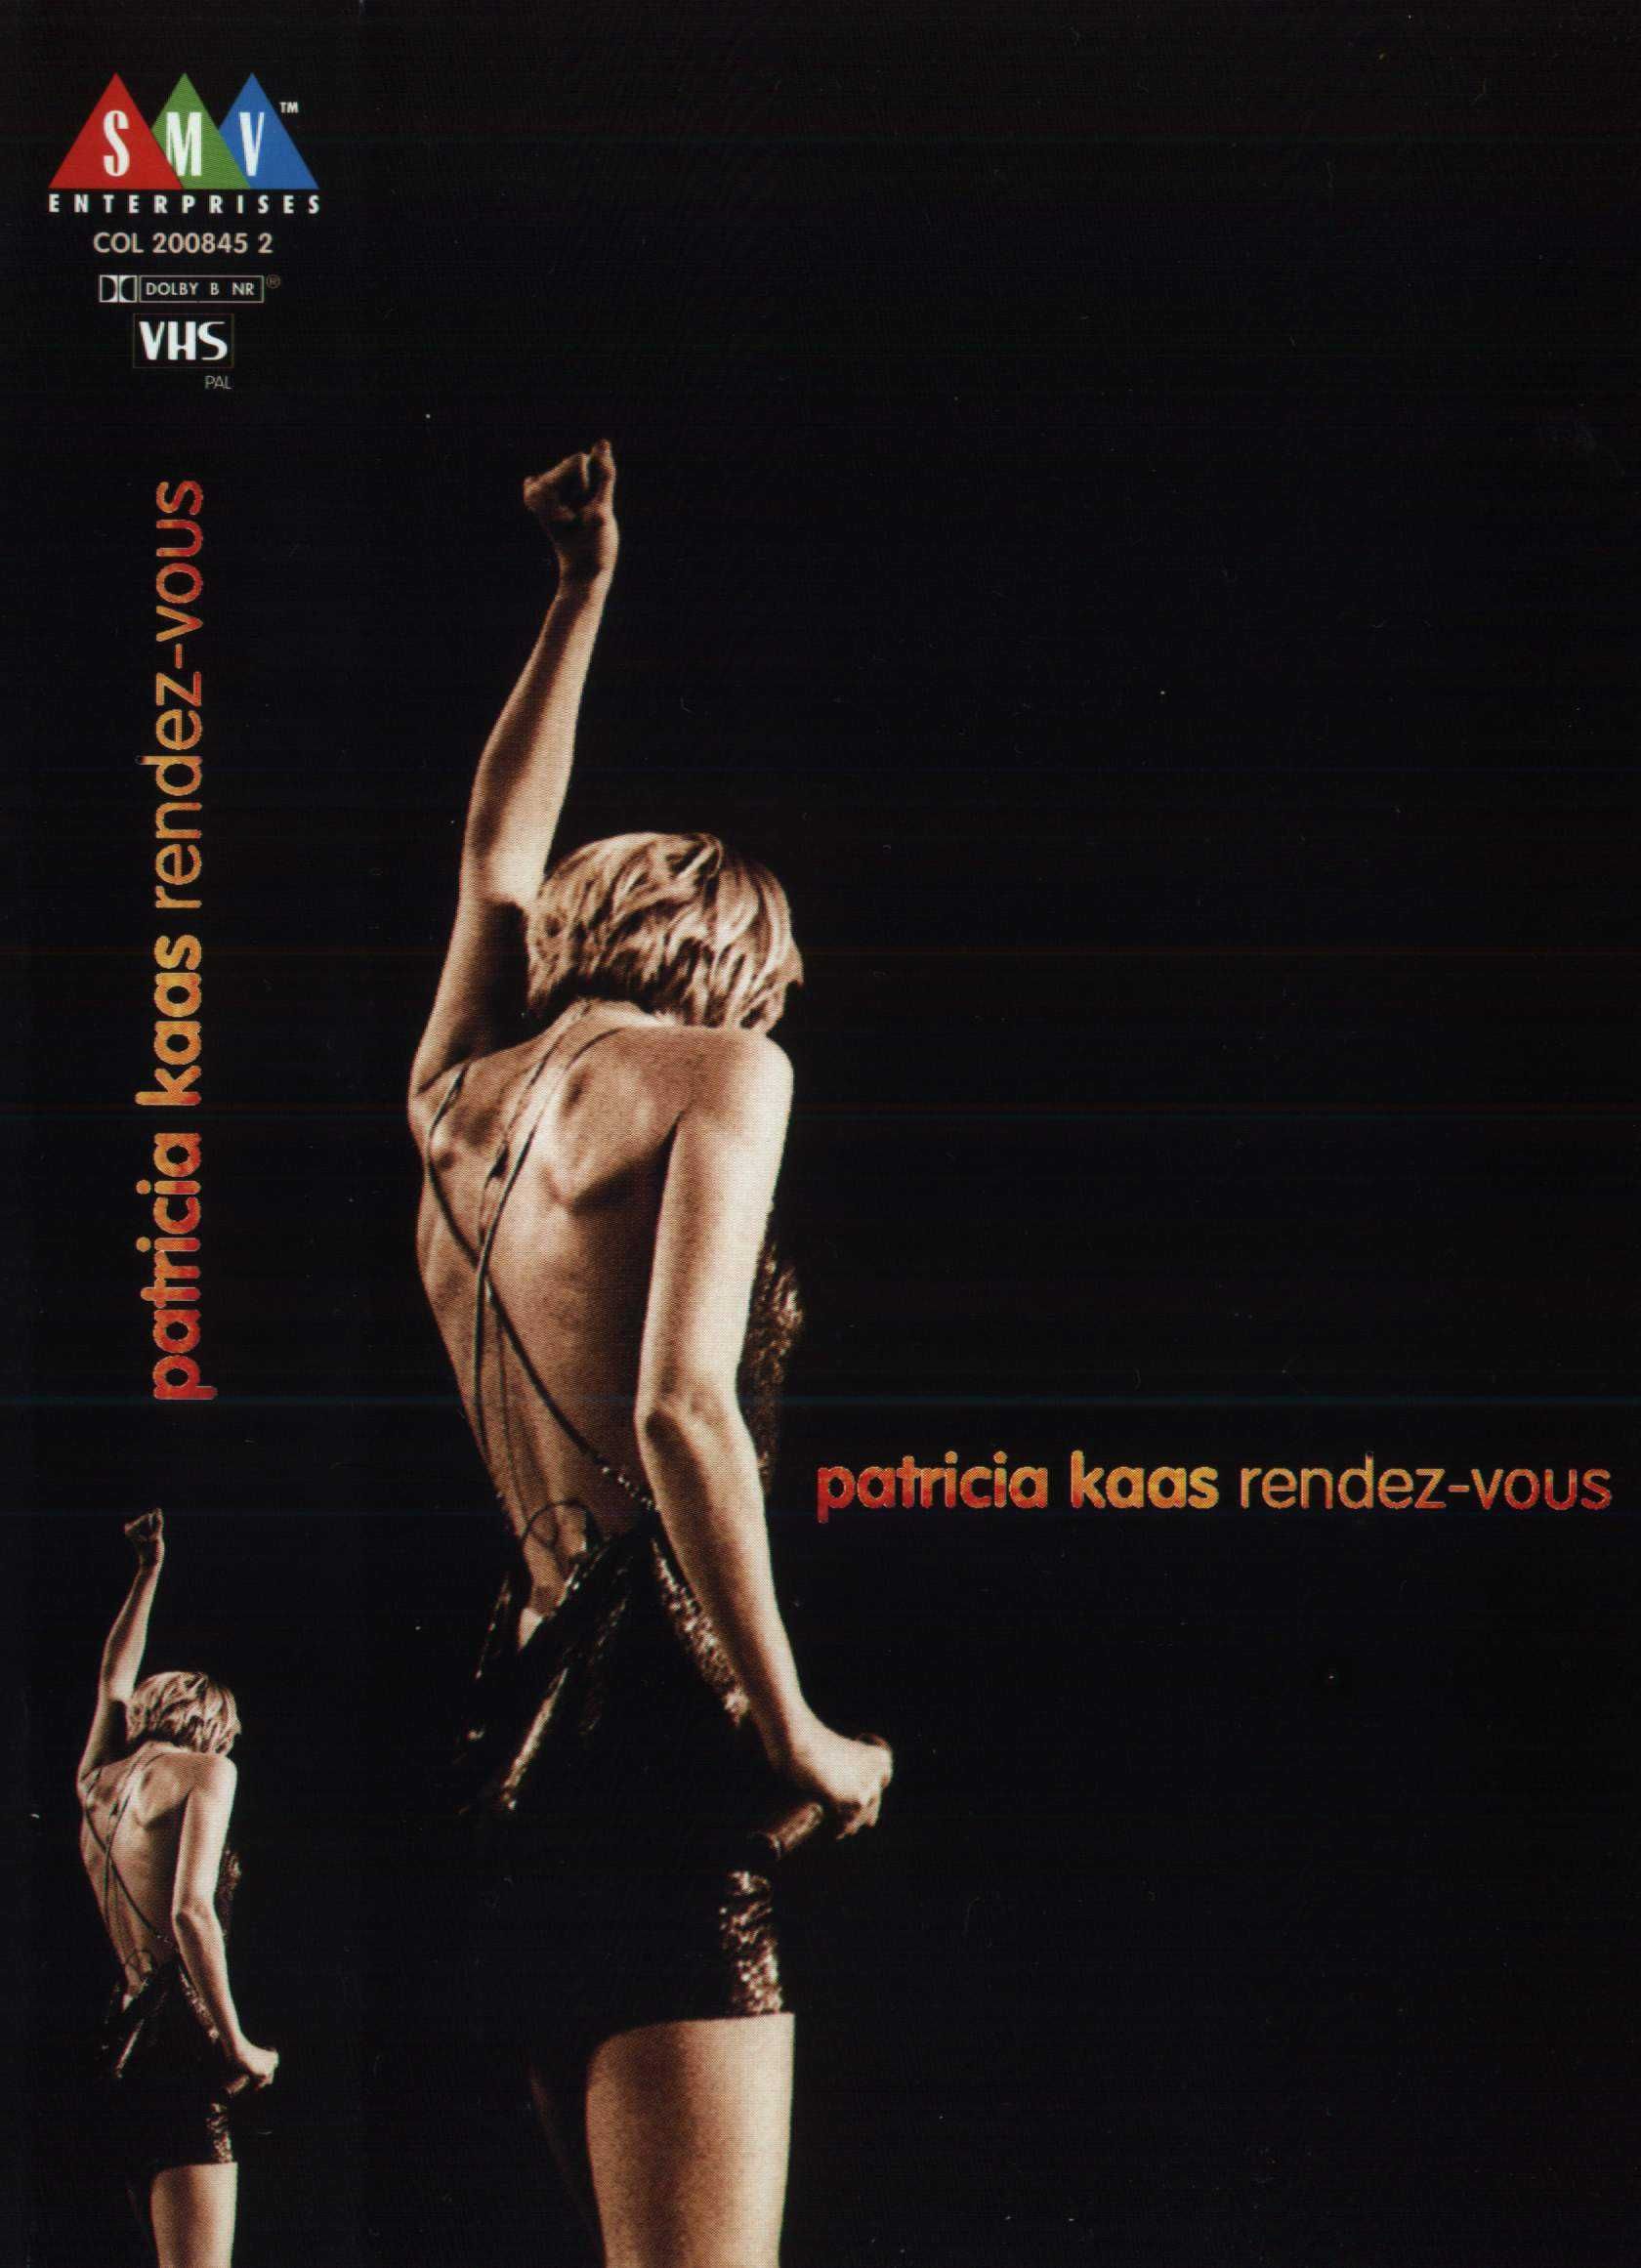 Patricia Kass Rendez-Vous Live Koncert VHS